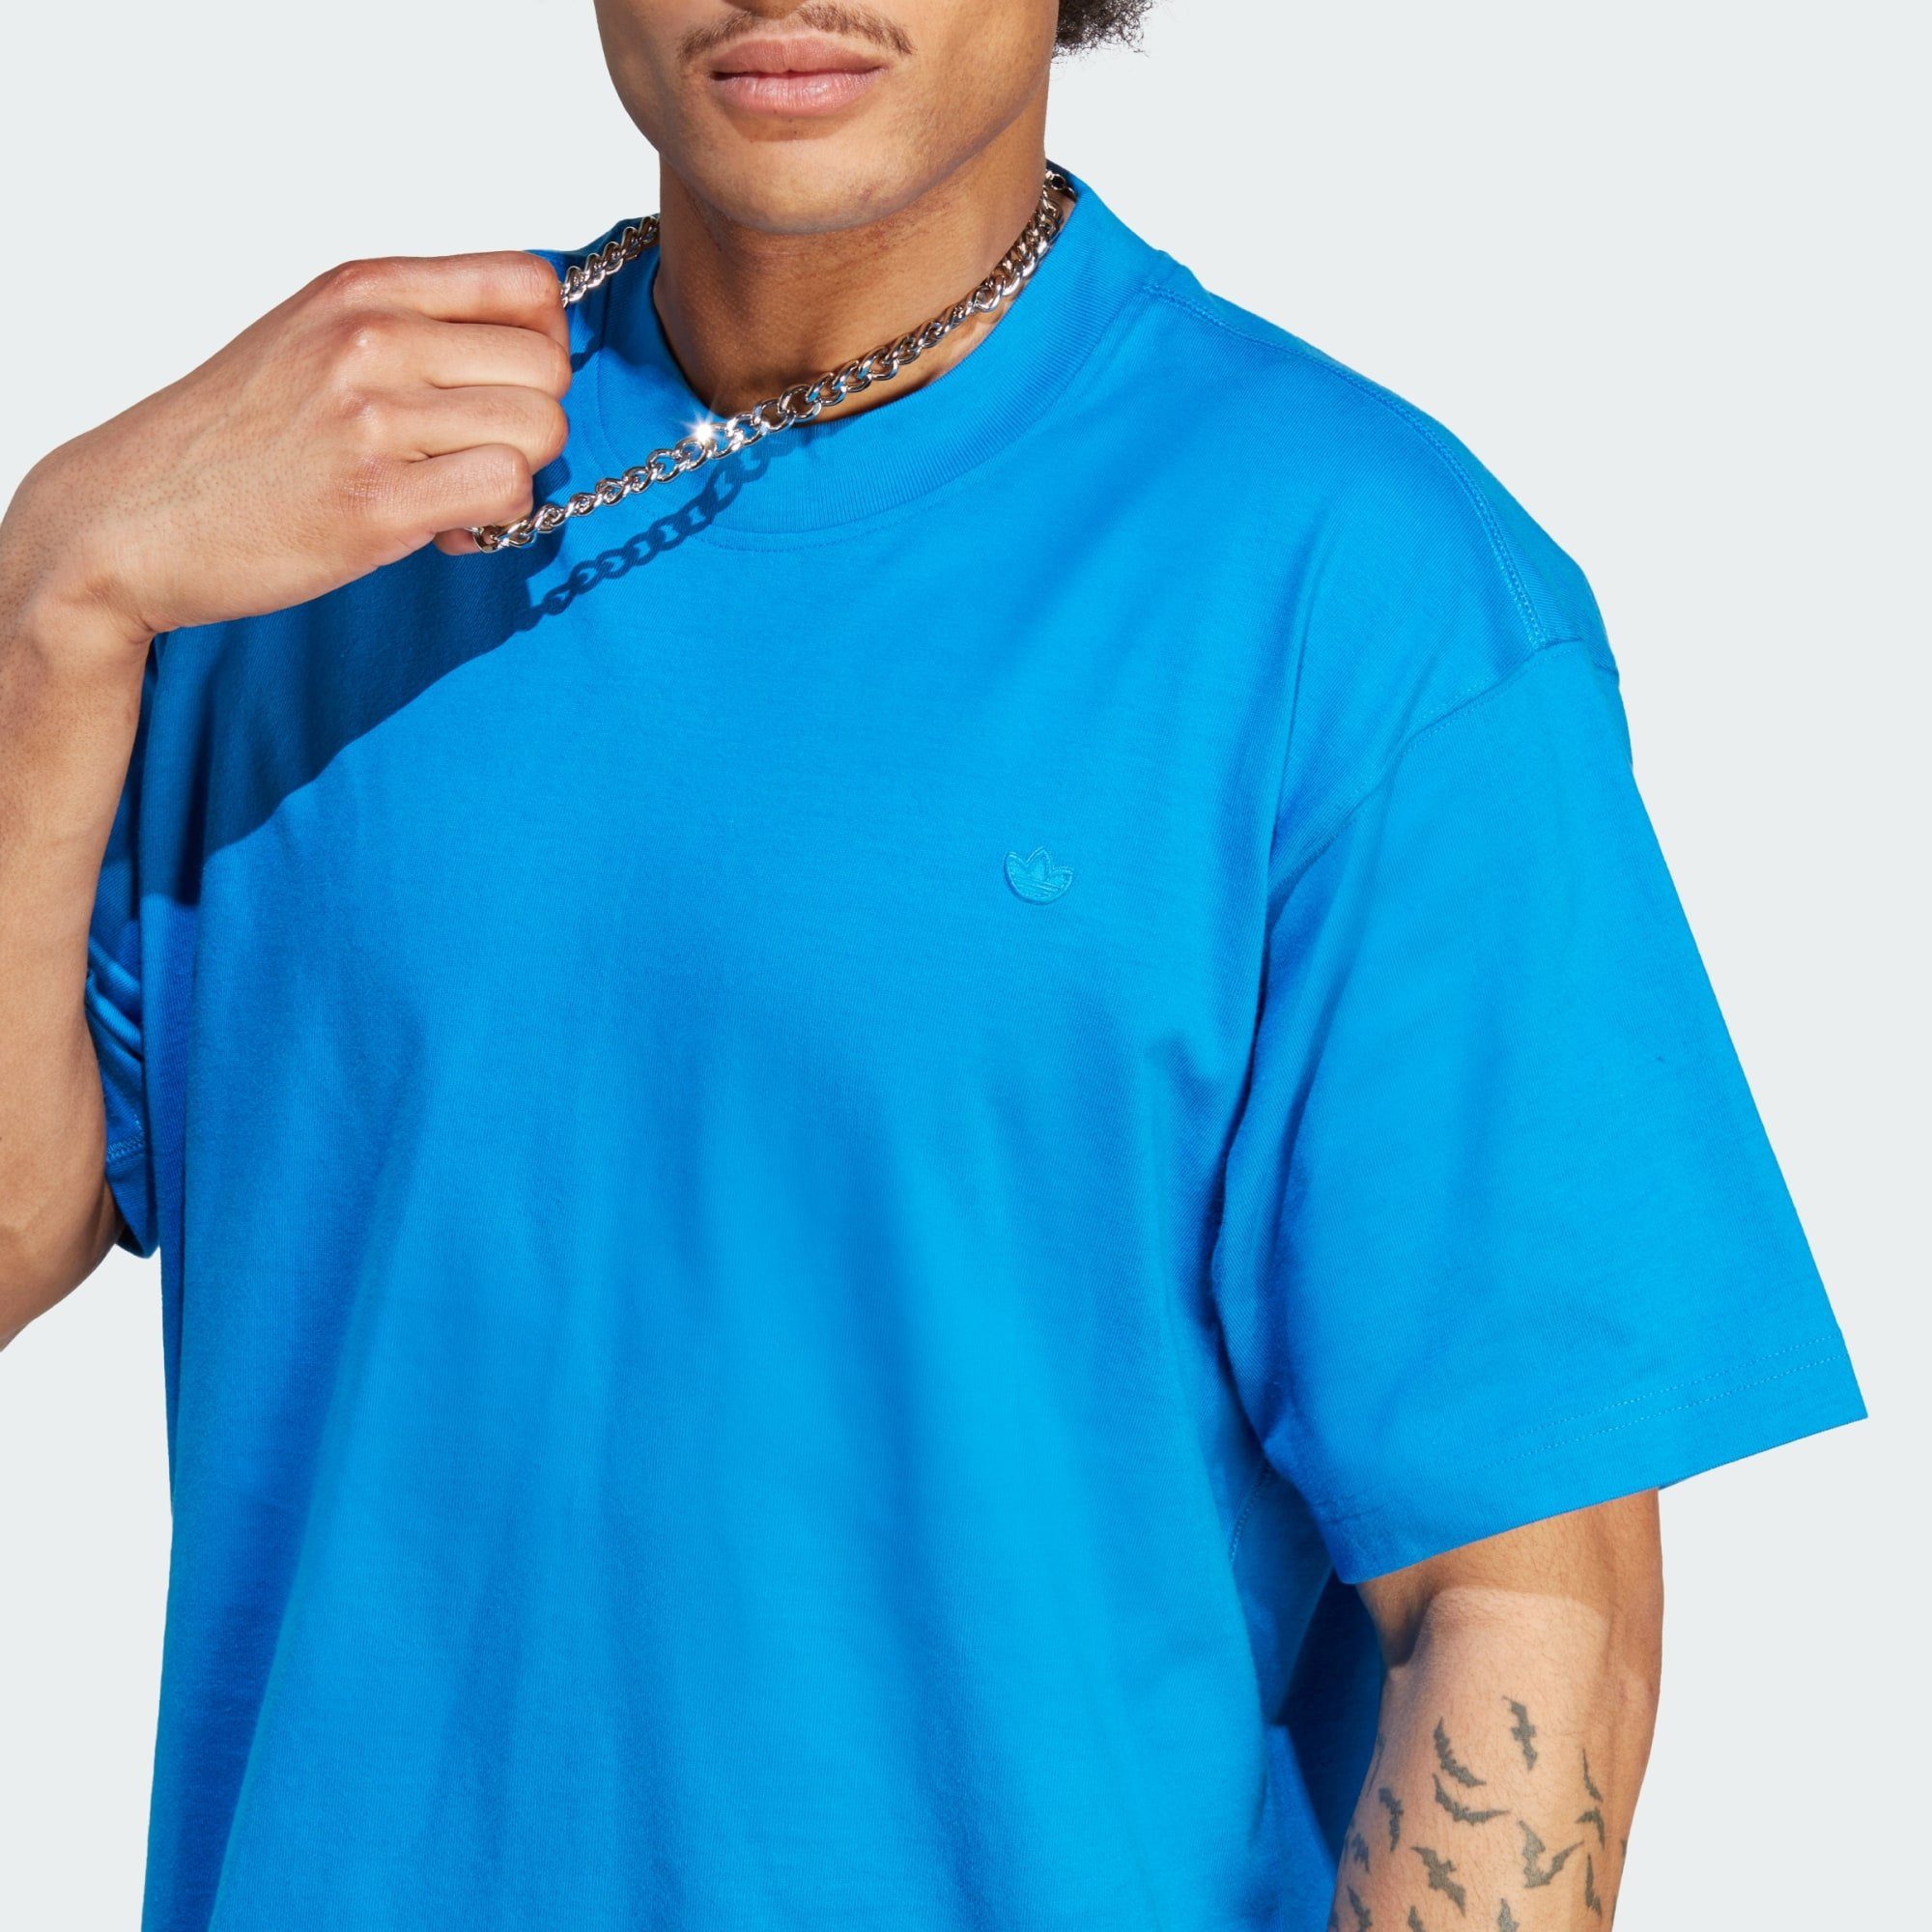 CONTEMPO Originals Bird T-Shirt Blue adidas T-SHIRT ADICOLOR